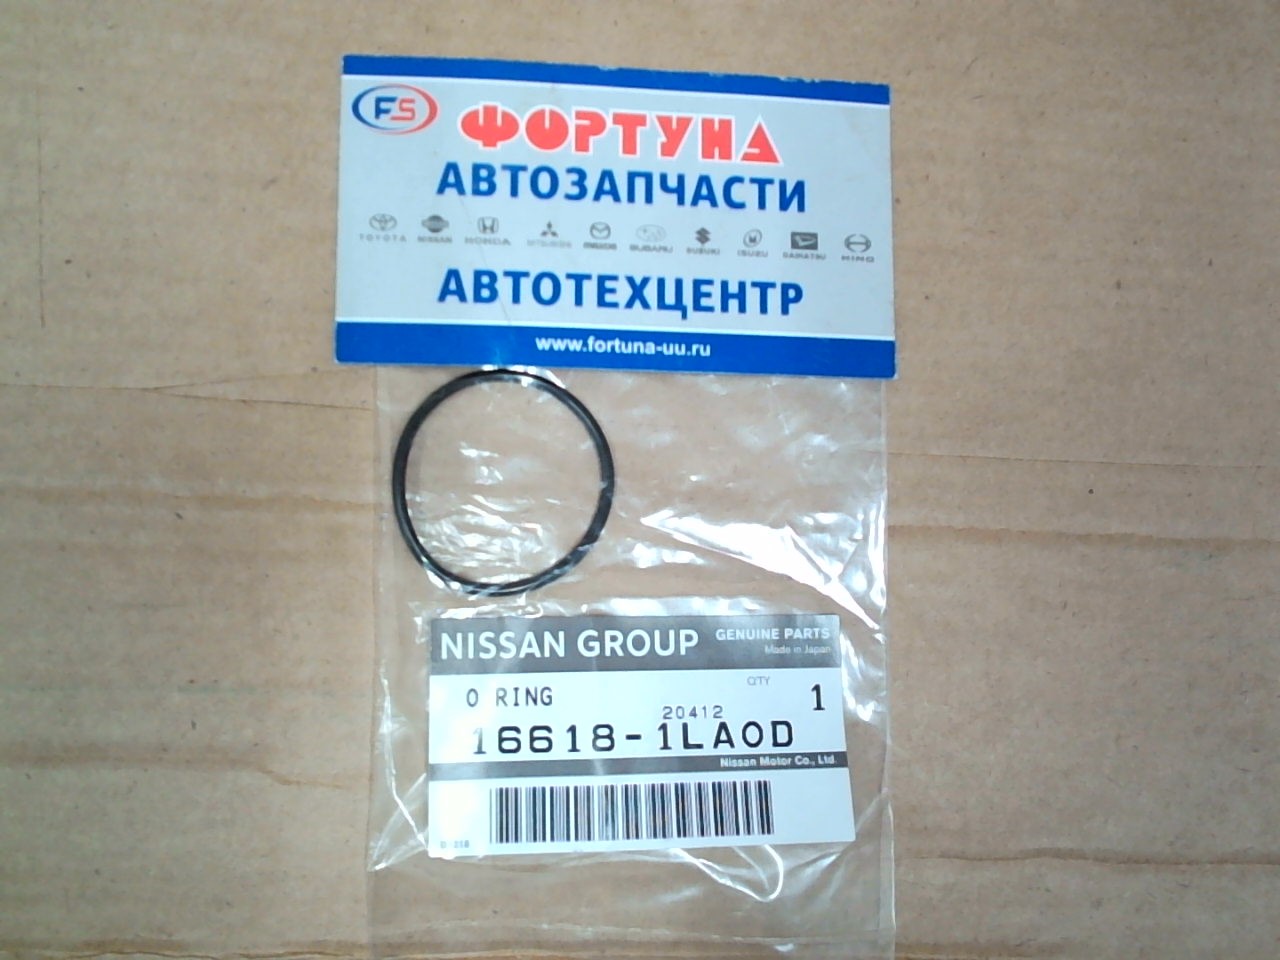 Кольцо уплотнительное топливной форсунки 16618-1LA0D NISSAN на  